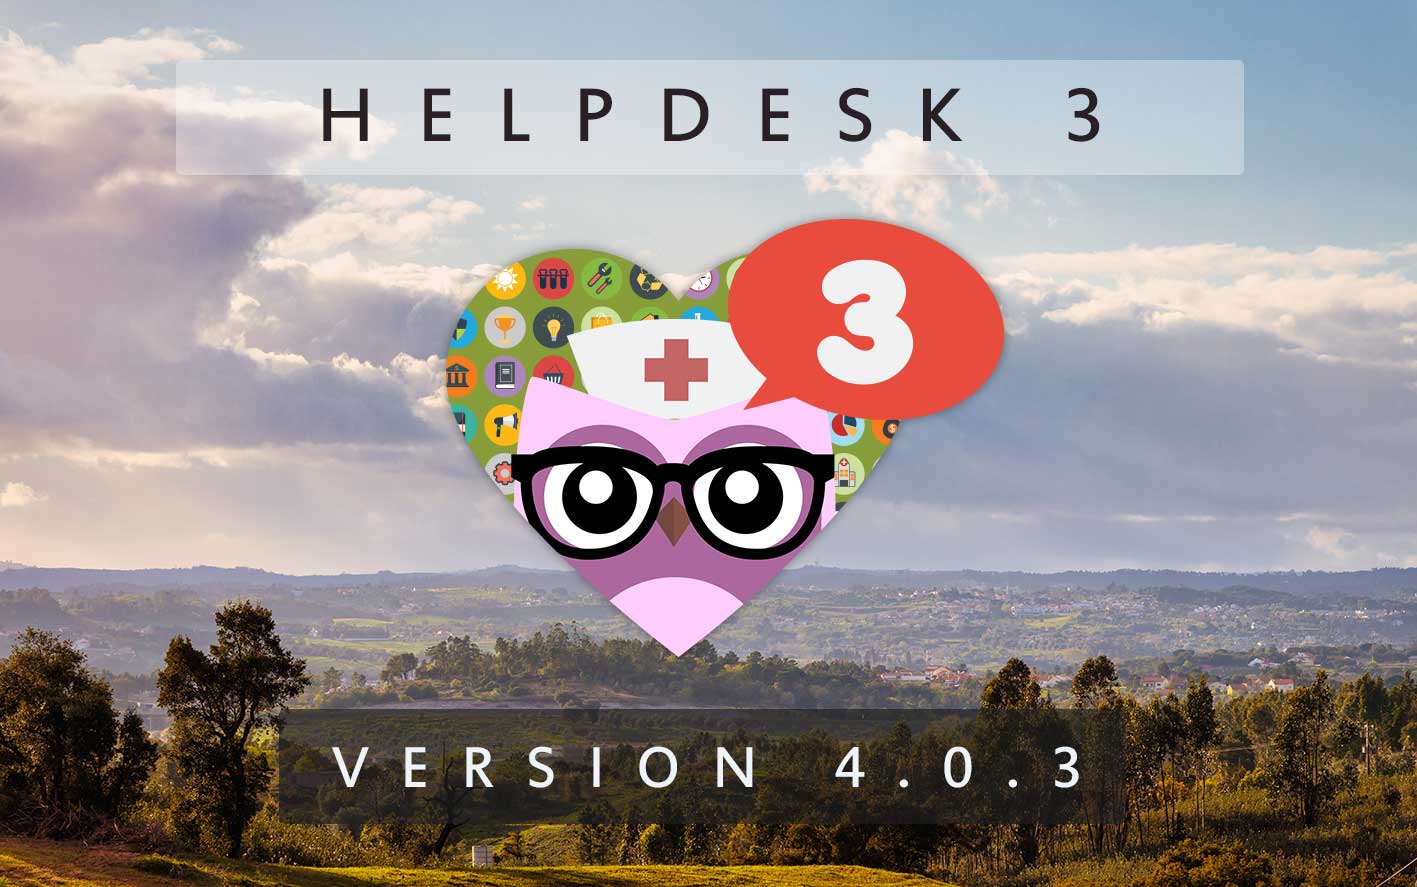 HelpDesk 3 - Version 4.0.3